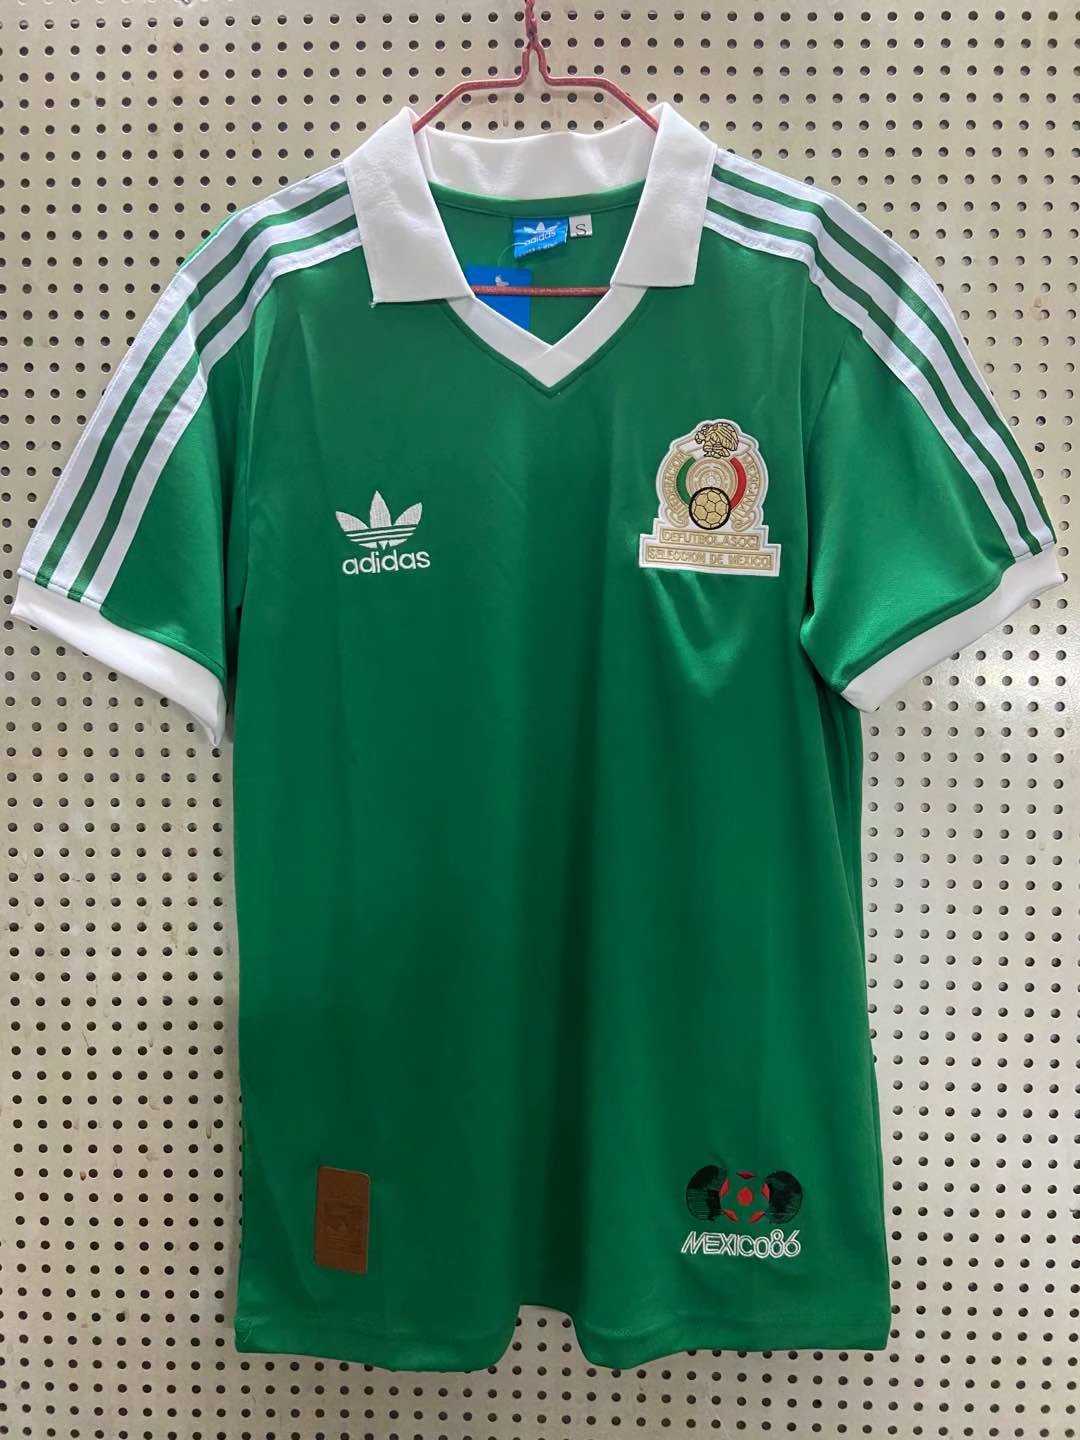 1986 Mexico Home Retro Mens Soccer Jersey Replica 